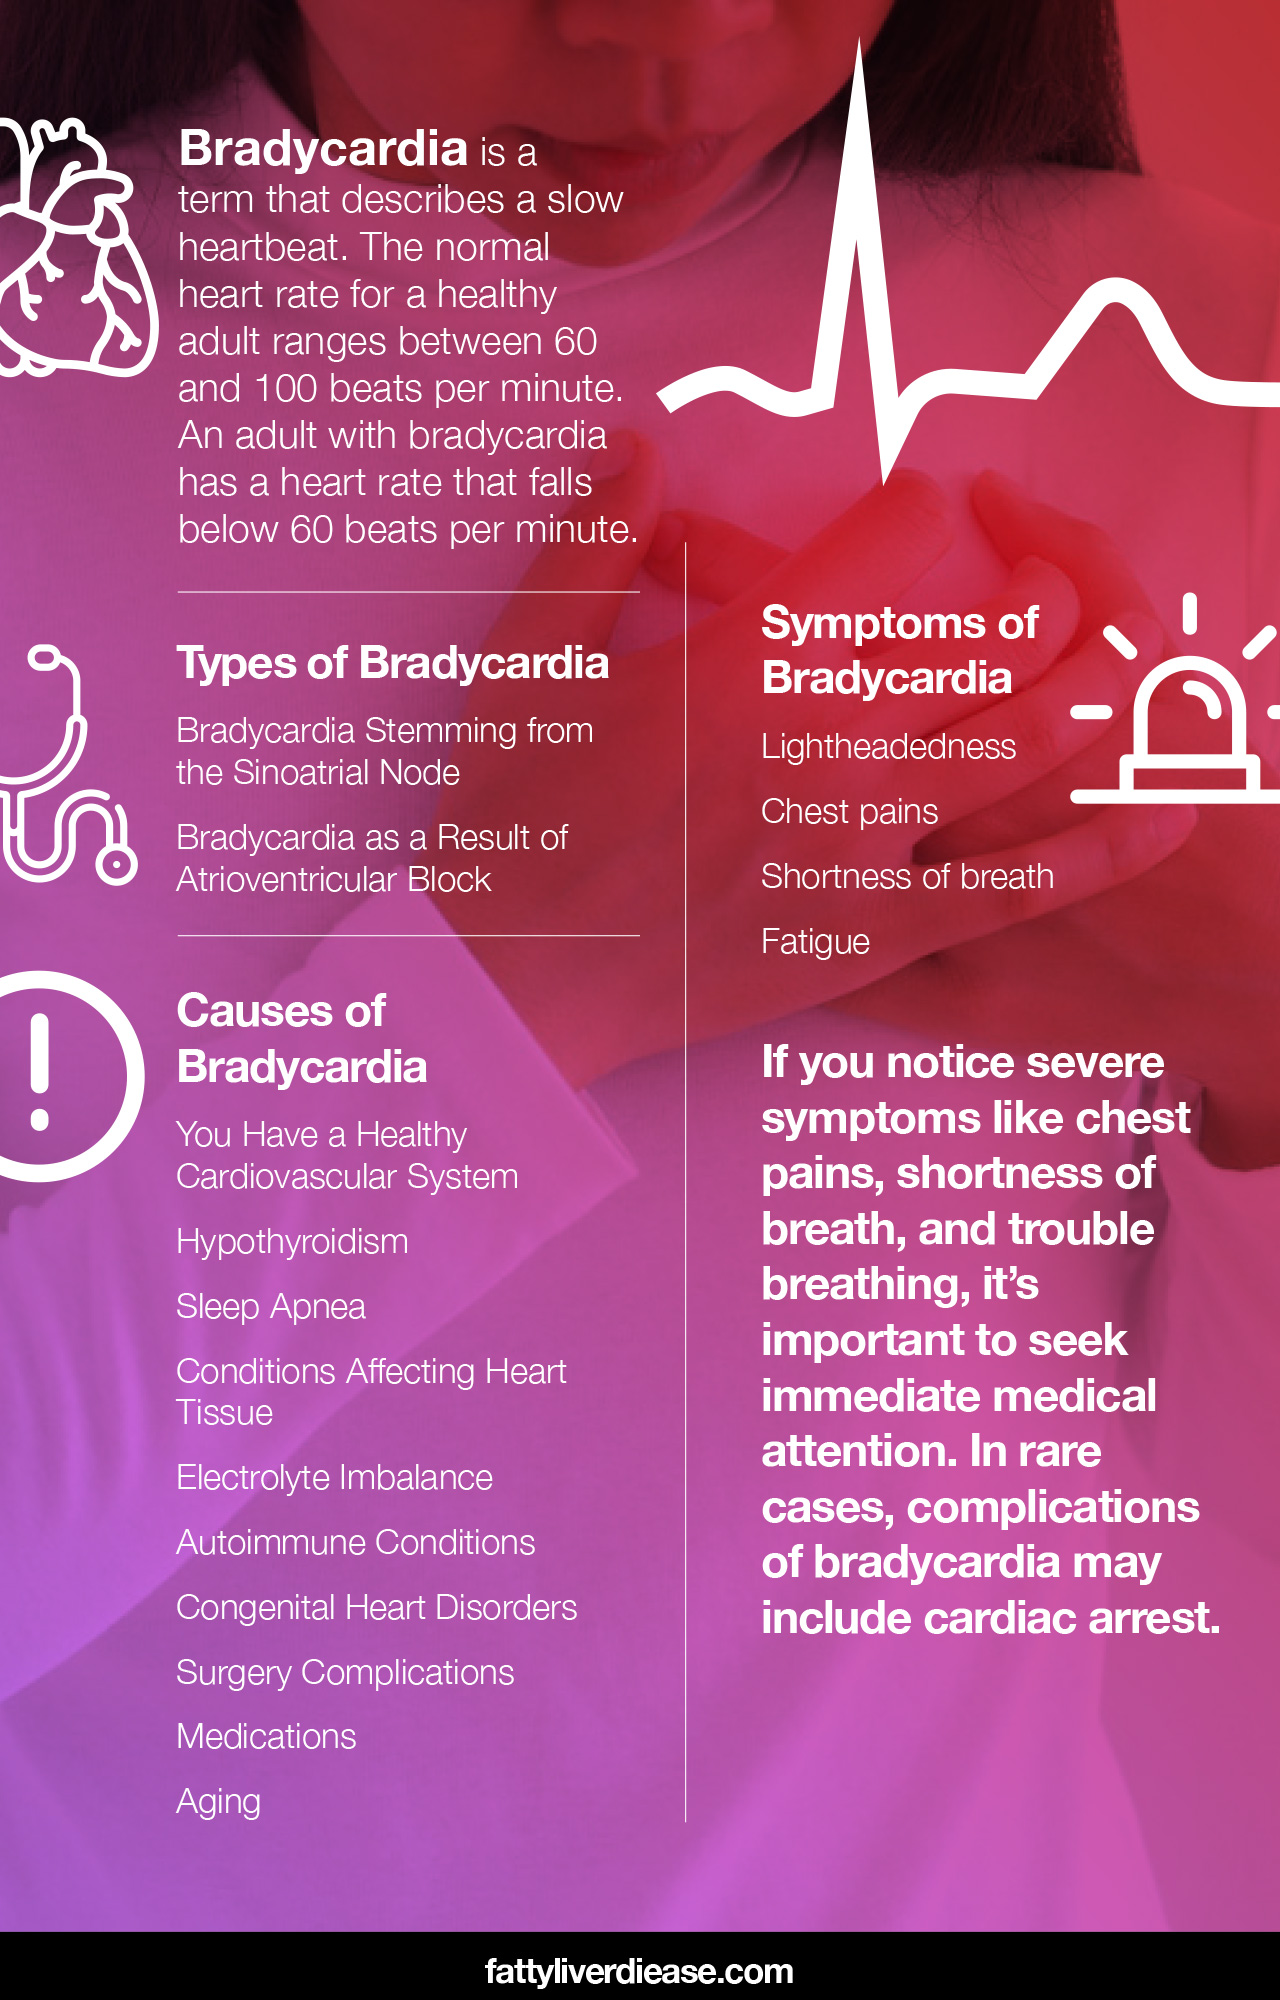 What causes bradycardia